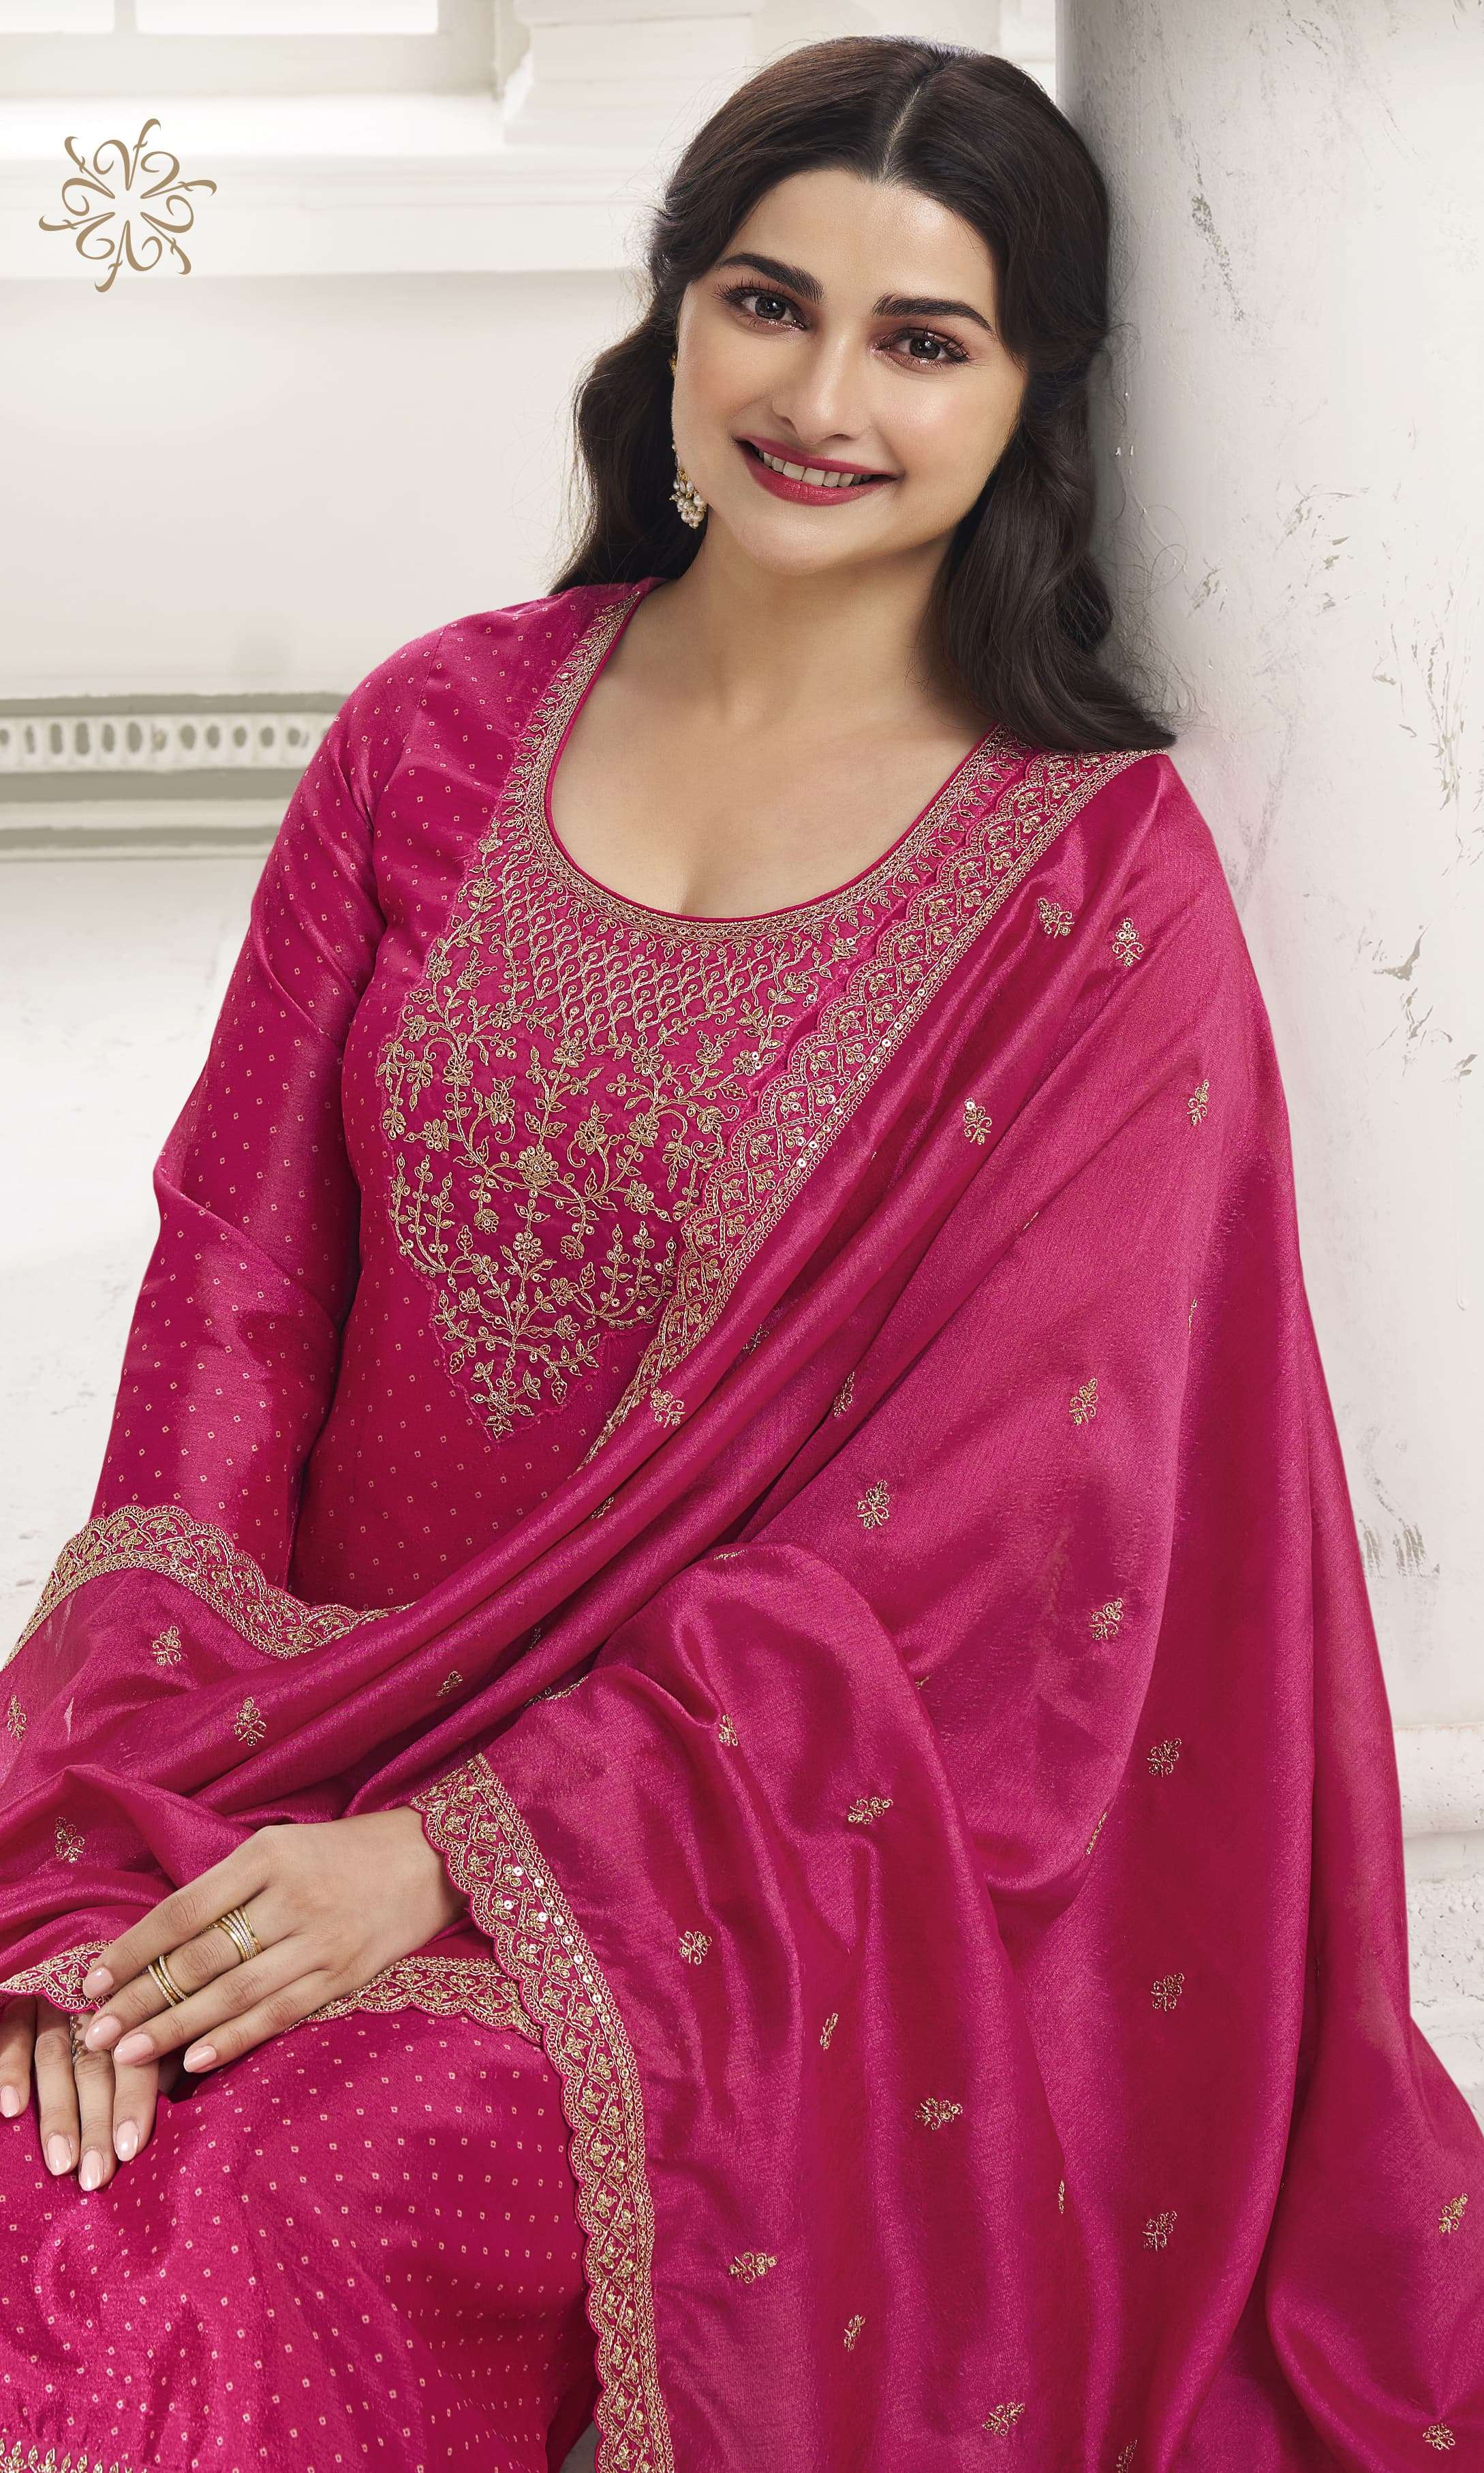 vinay fashion kuleesh surbhi 66661-66666 series latest festive wear salwar kameez wholesaler surat gujarat